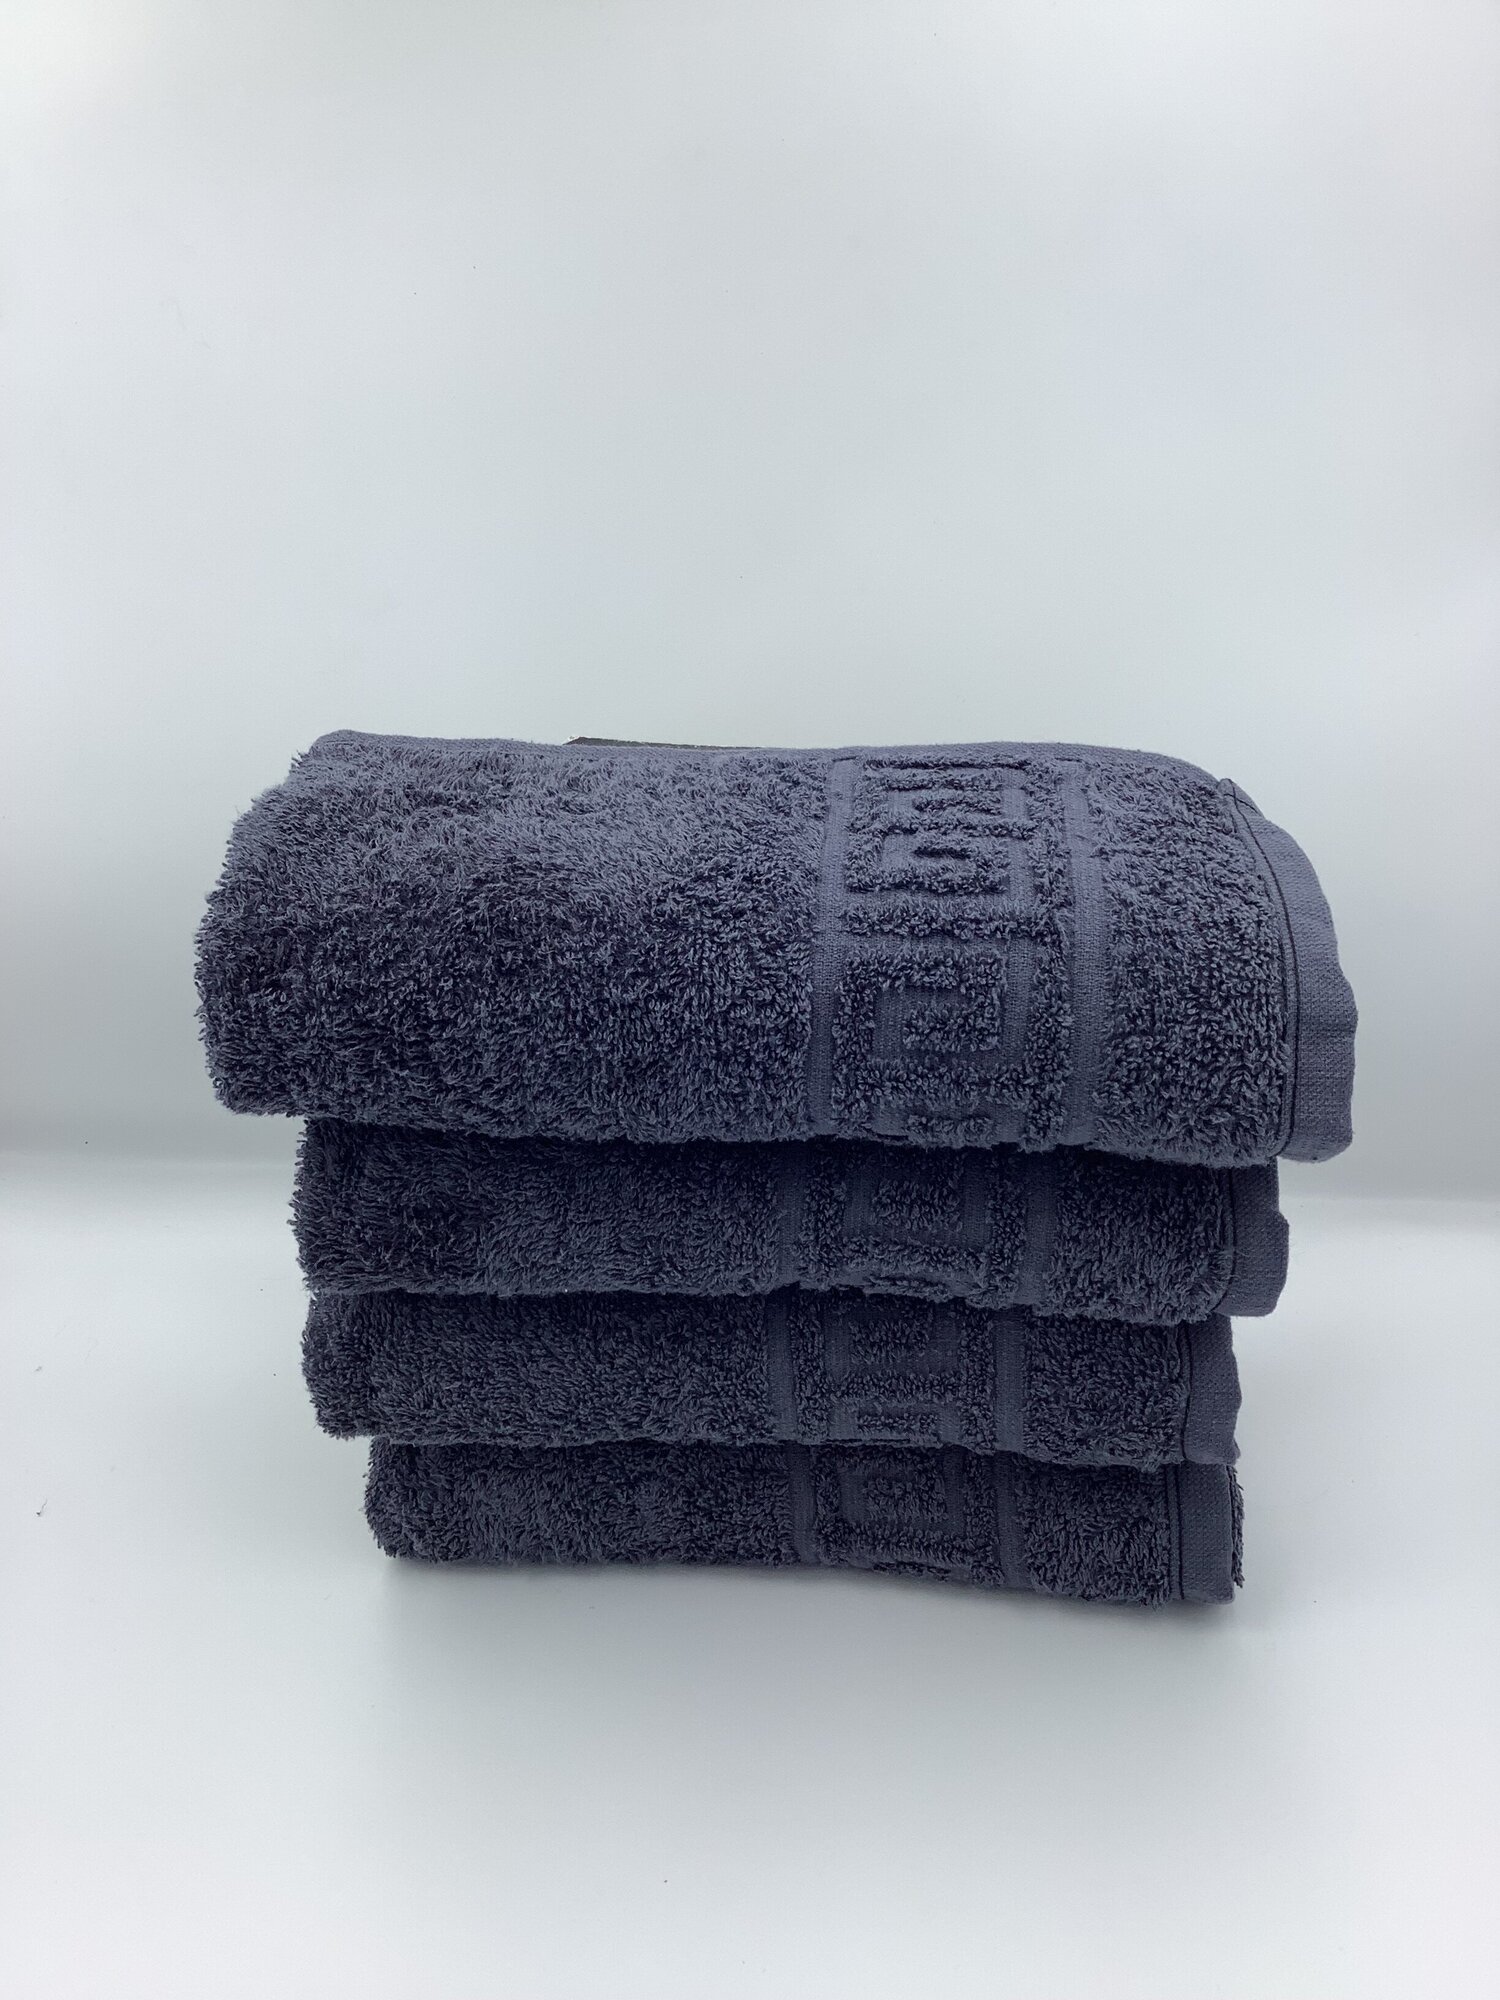 Набор банных полотенец, махровые полотенца для рук и ног 40х70 см. 4 шт. 430 гр. Хлопок 100% "Ашхабадский текстильный комплекс" графит